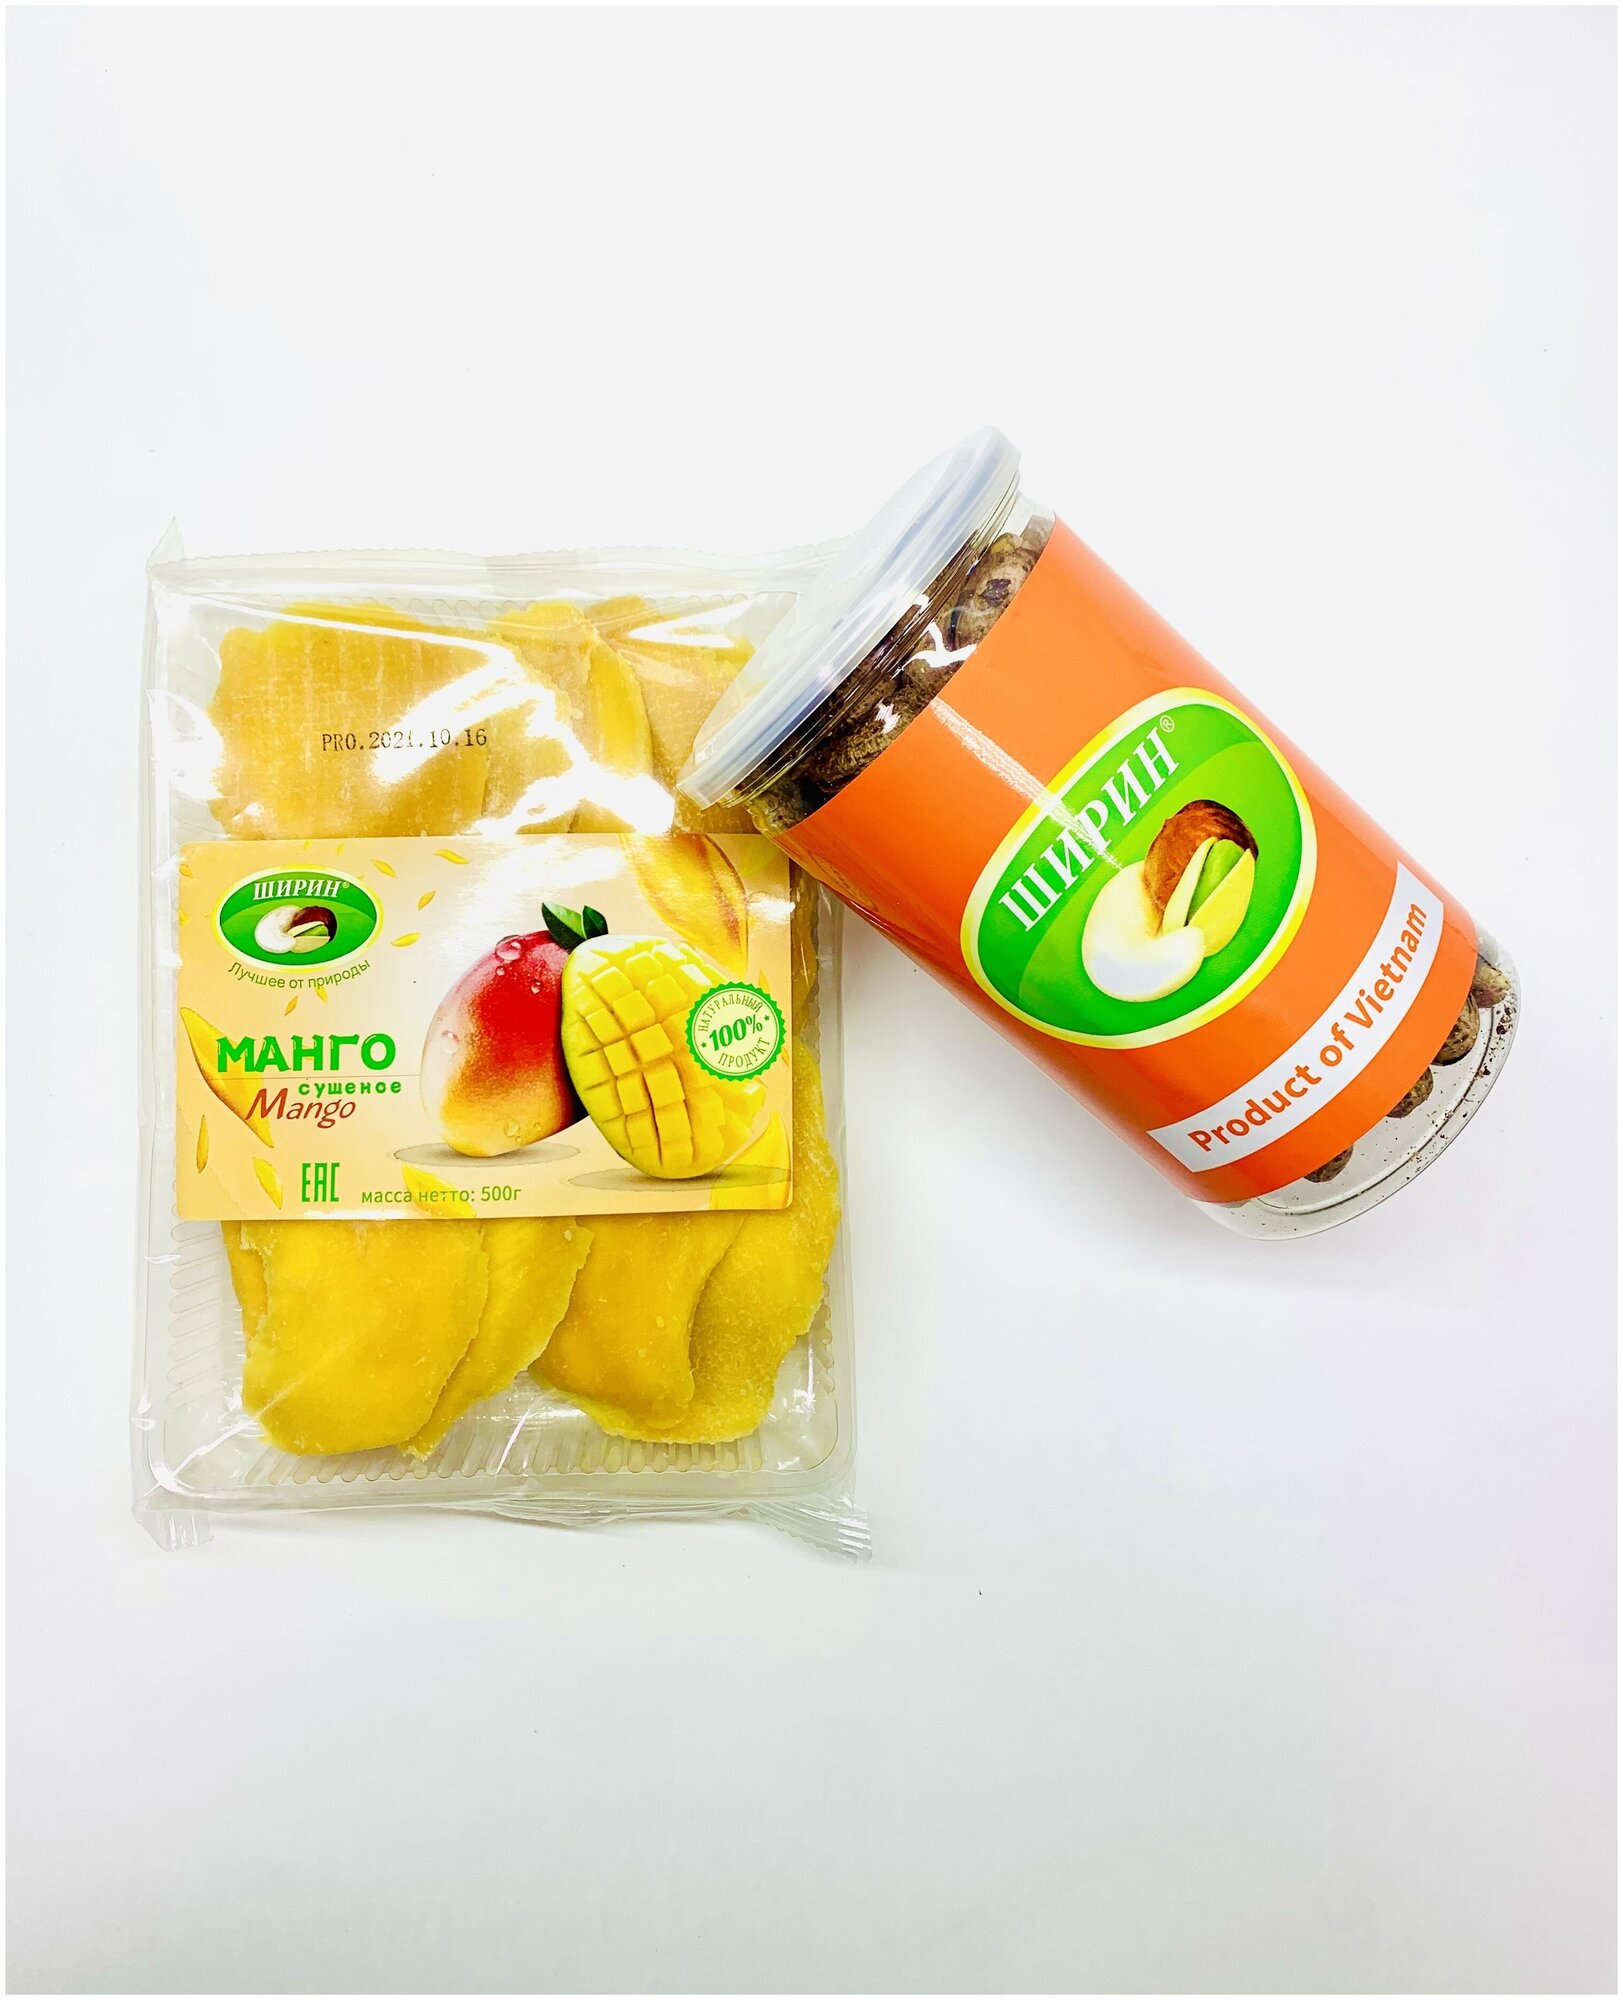 Комплект Манго сушеное натуральное без сахара 500гр и Кешью неочищенный жареный соленый 300гр ширин Premium - фотография № 1